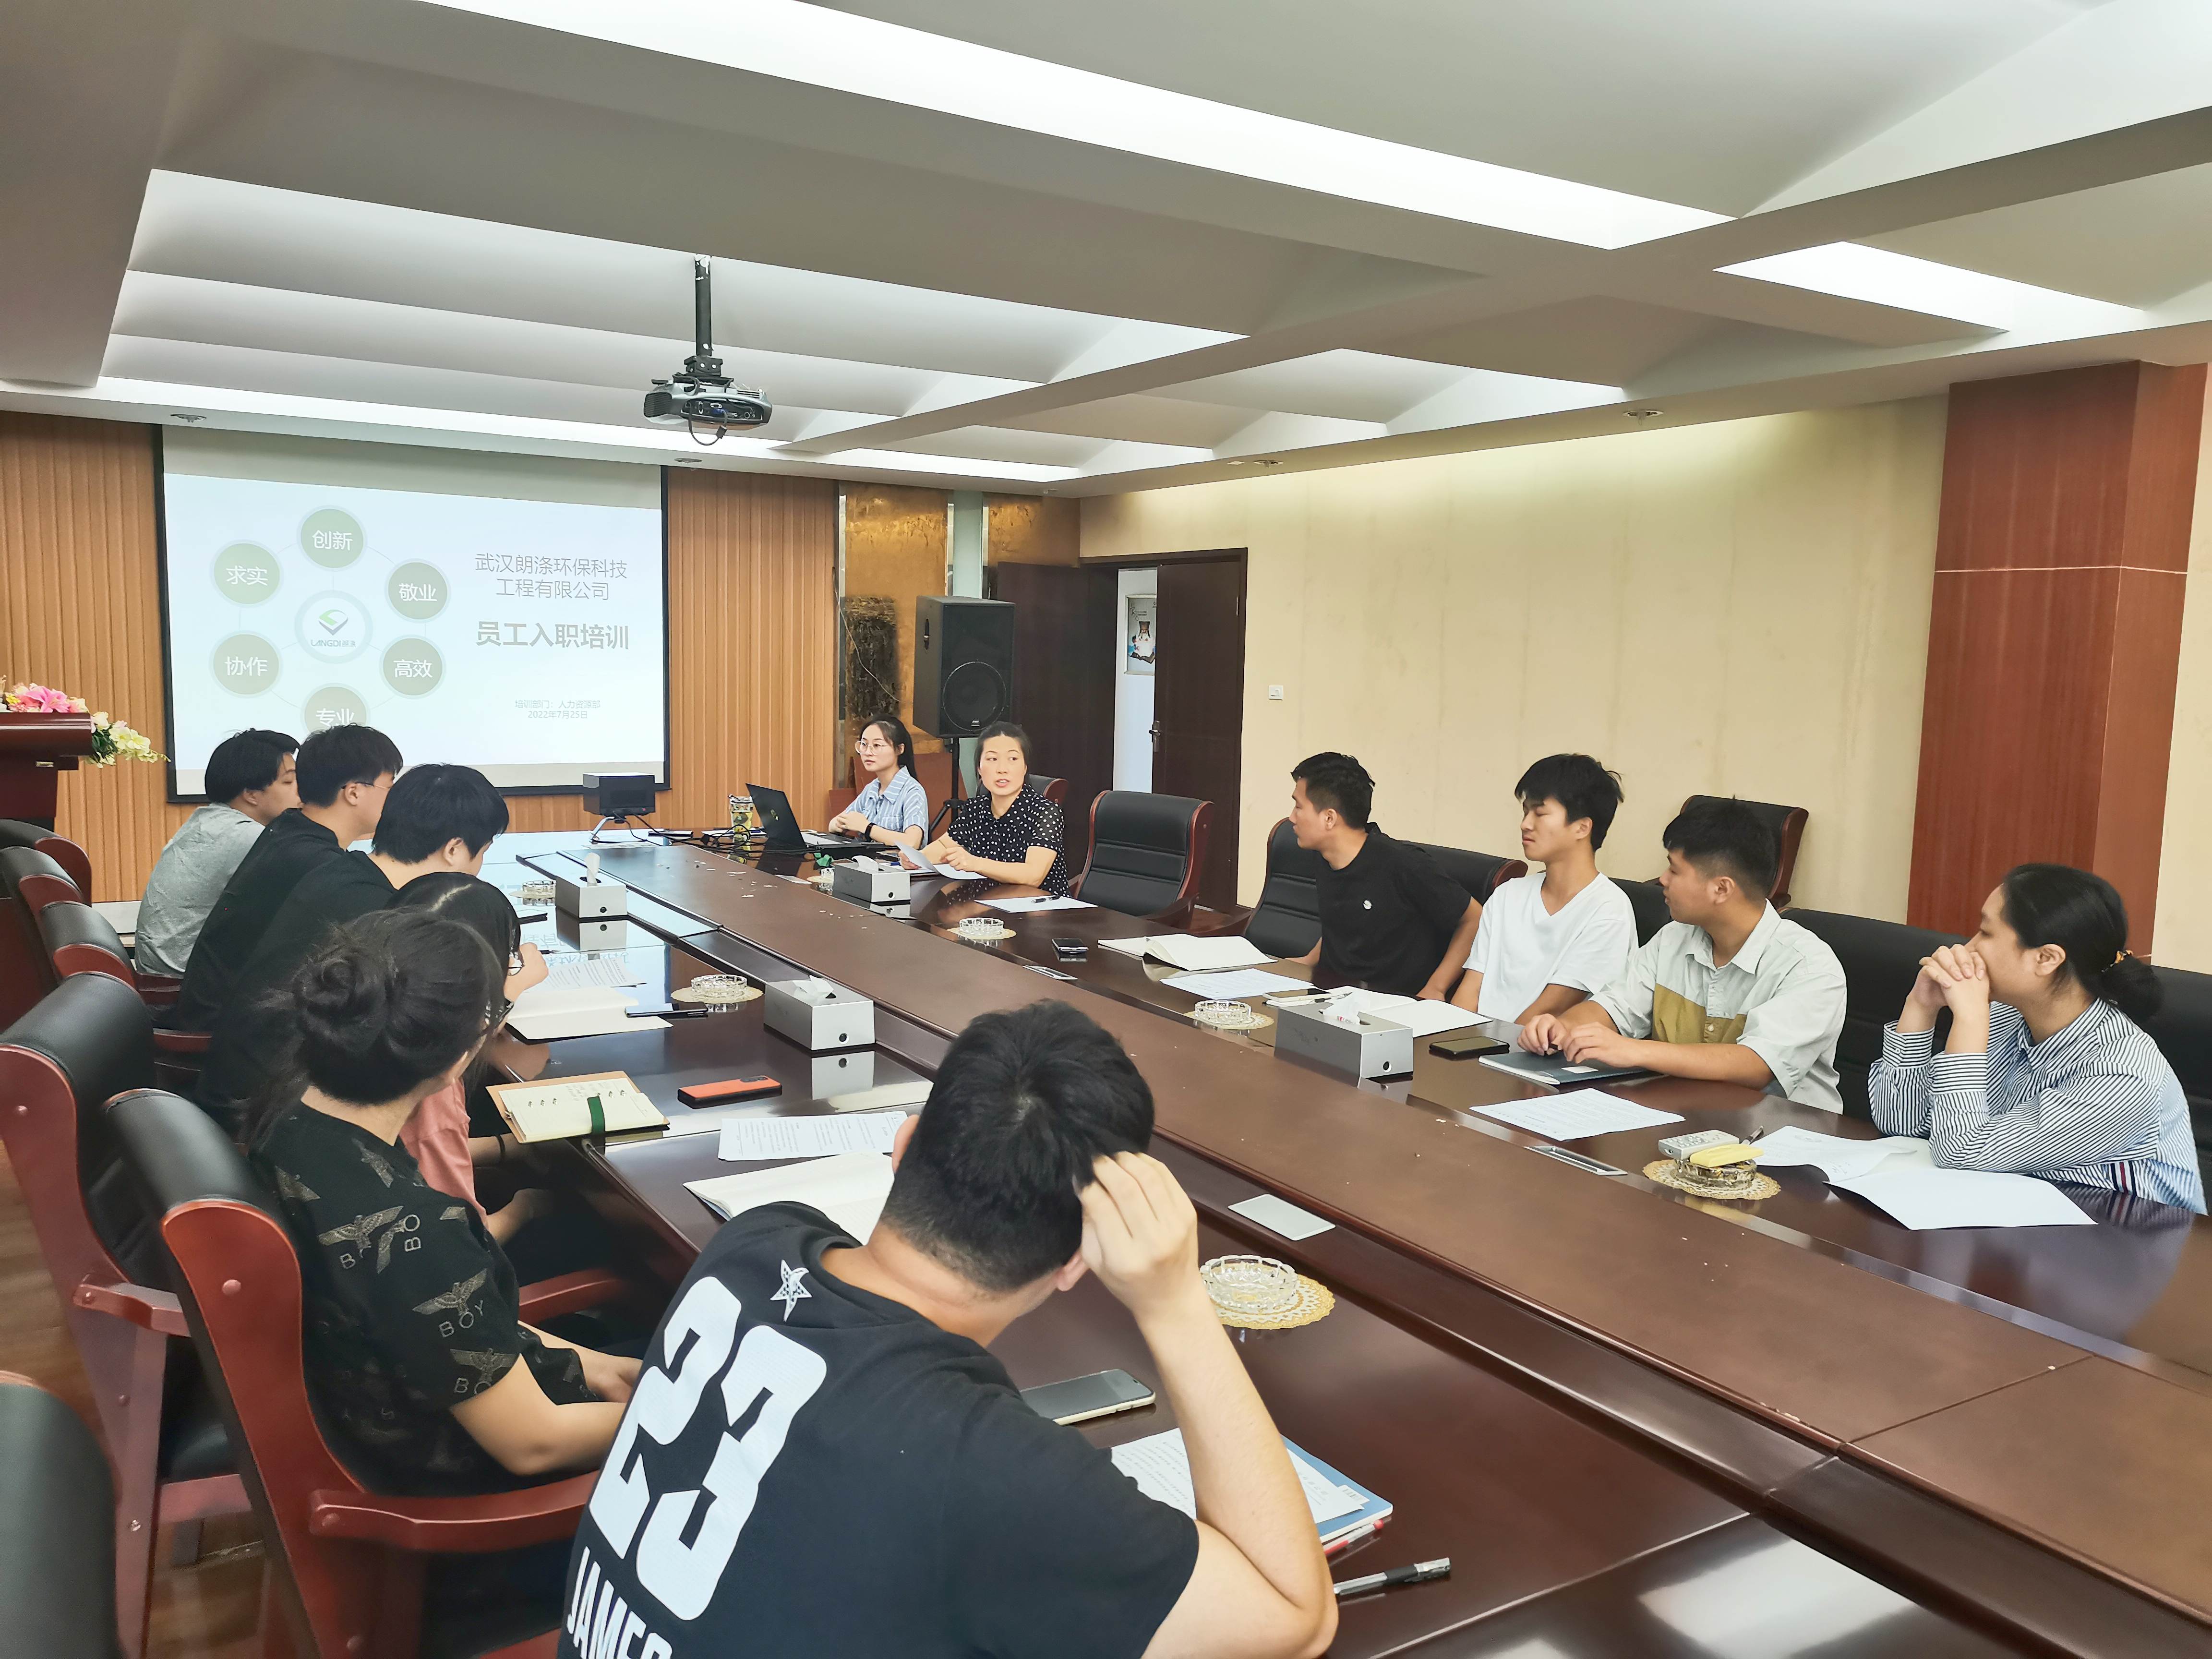 武汉bet亚洲官方投注环保公司举办2022年新员工入职培训